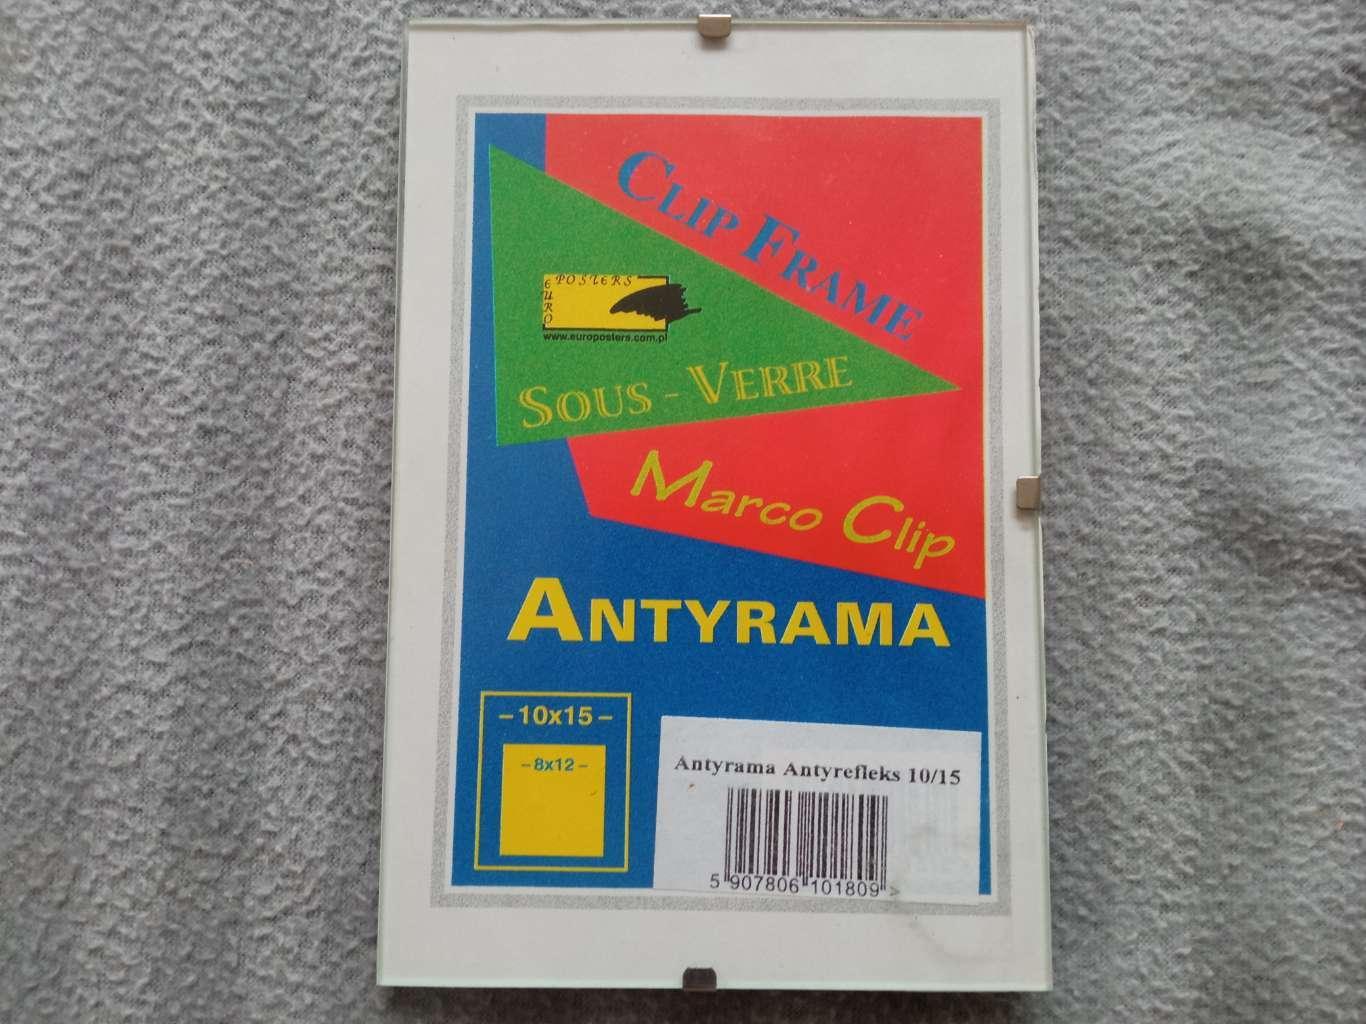  Ramka na zdjęcie Antyrama ze szkłem Antyrefleks 10 x 15 2 Full Screen